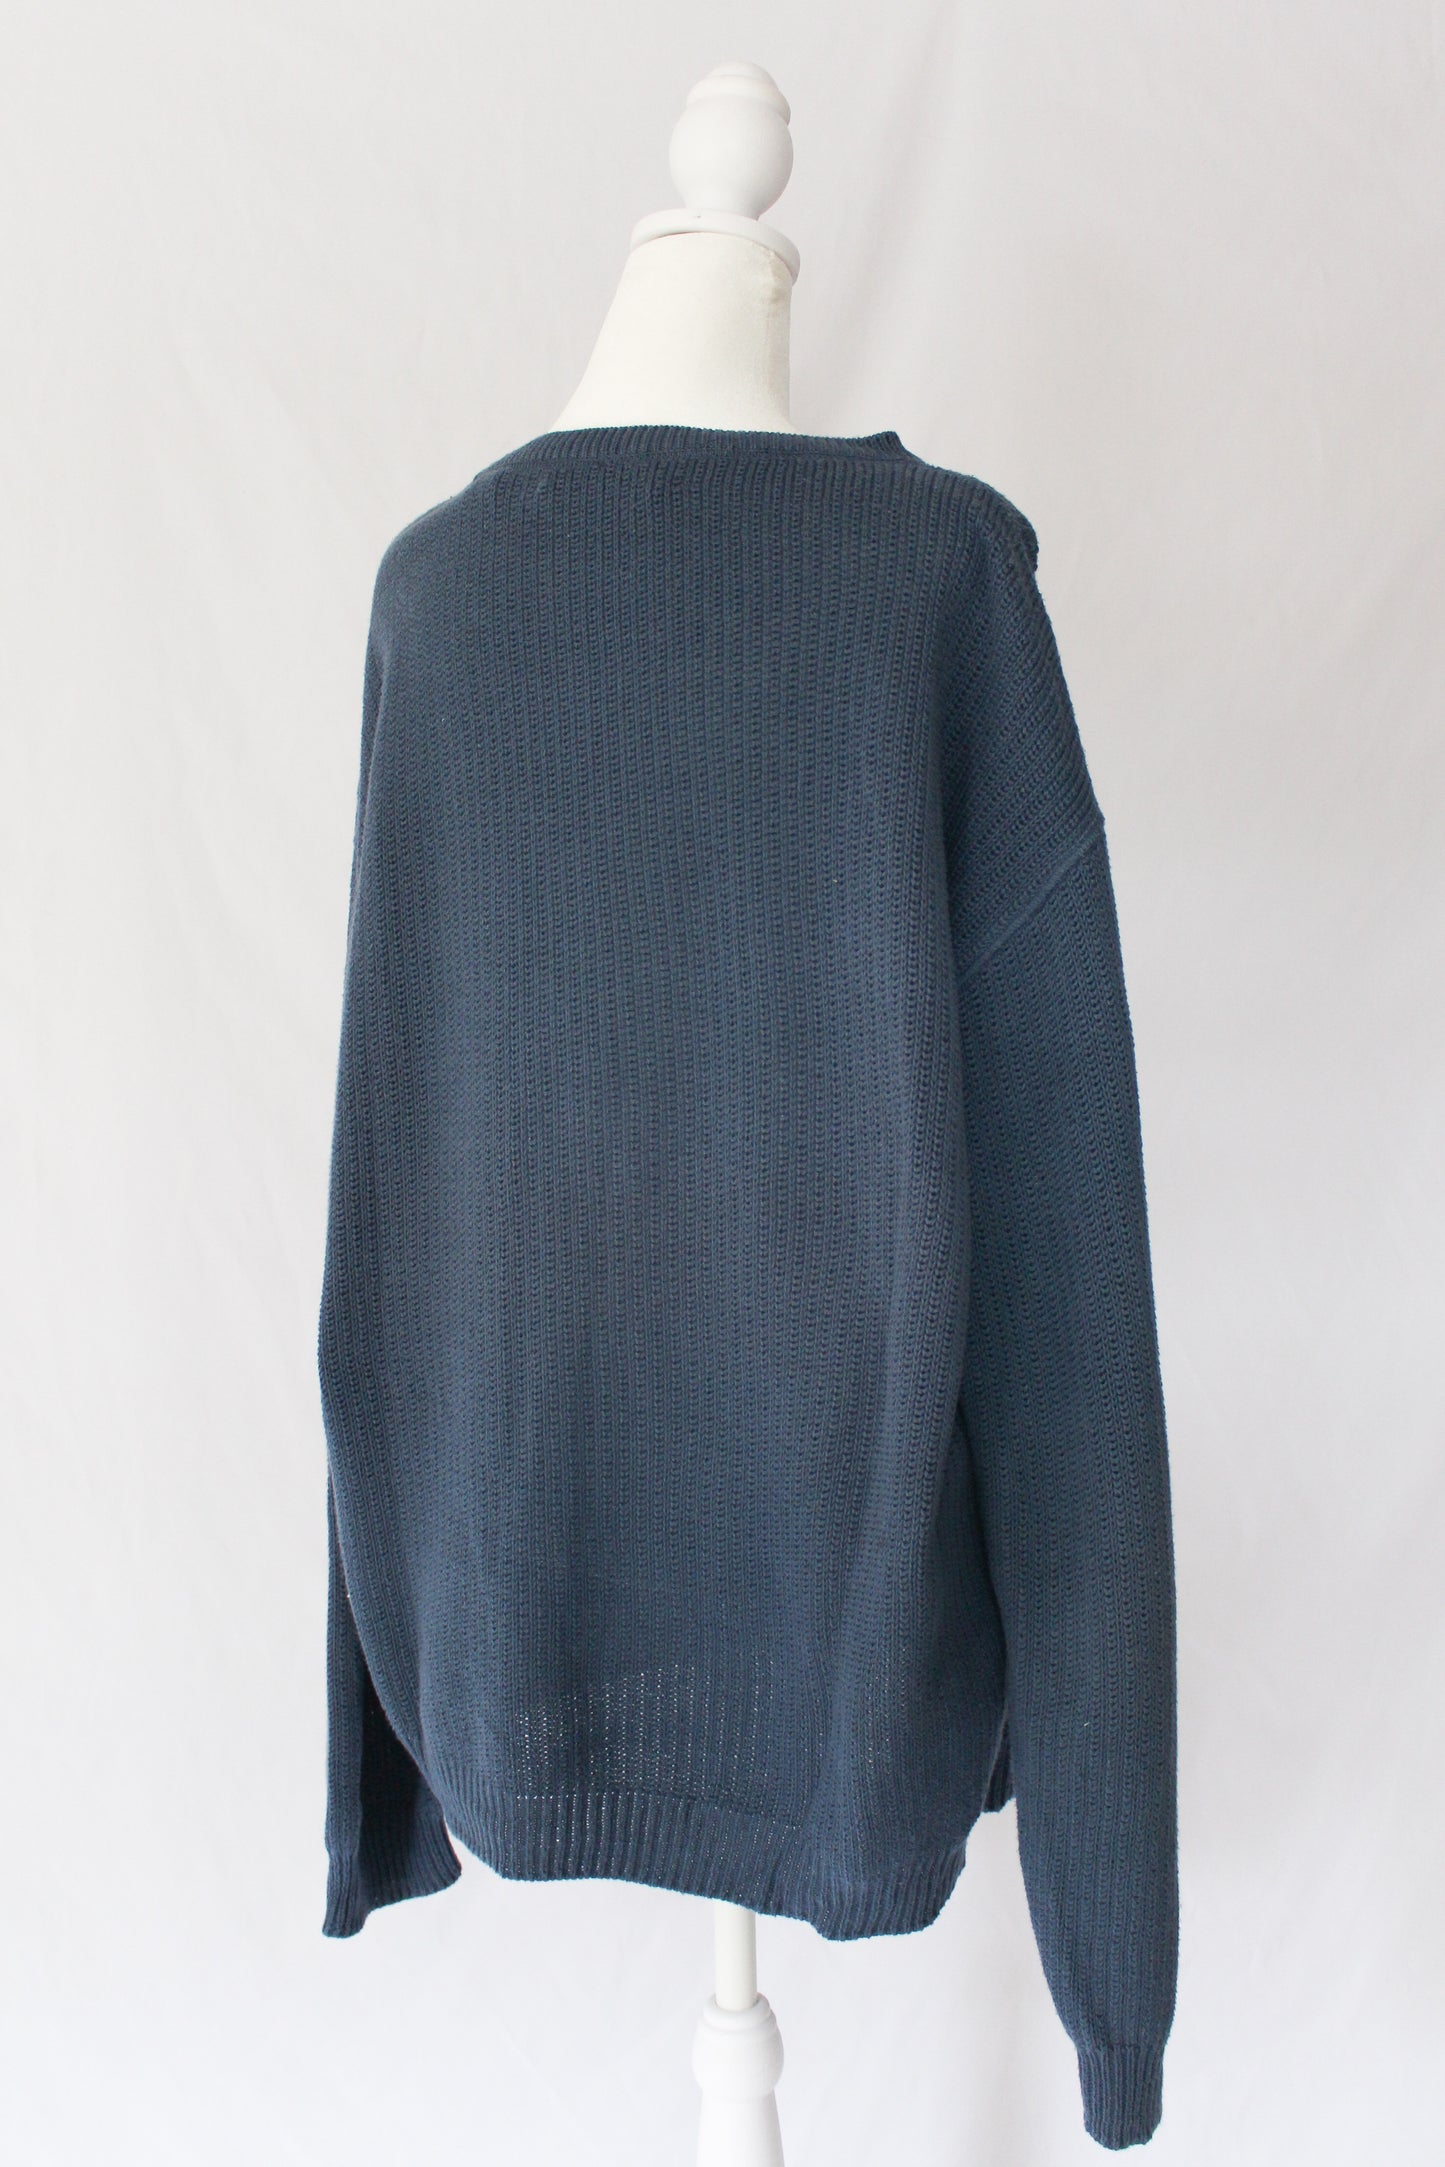 light knit cotton sweater in dusty blue 